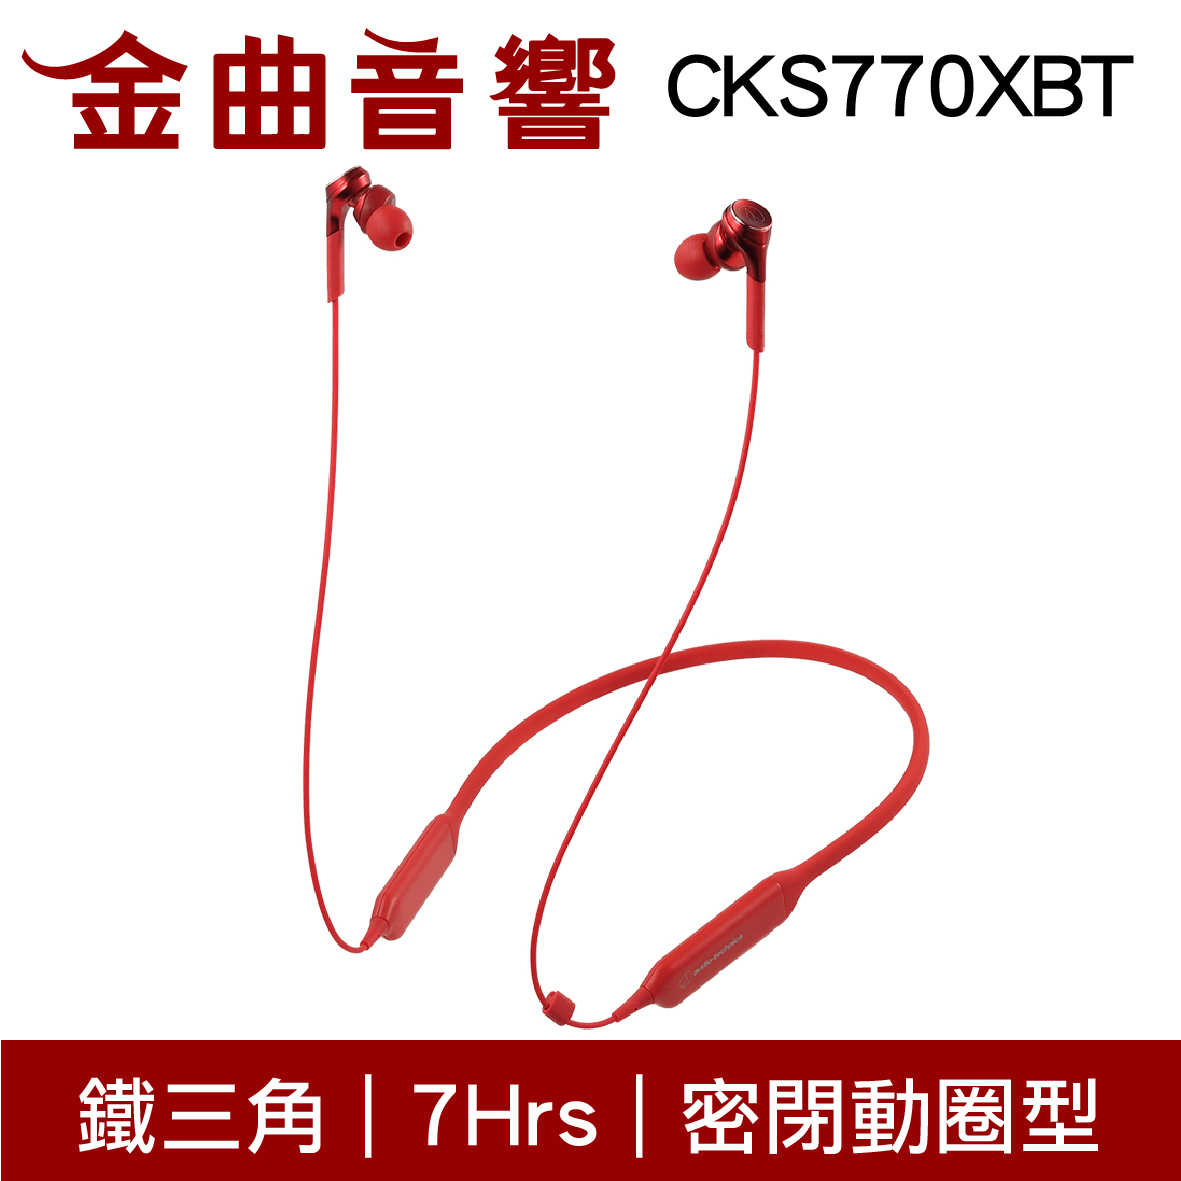 鐵三角 ATH-CKS770XBT 黑色 藍牙 耳機 無線 重低音 CKS770XBT | 金曲音響